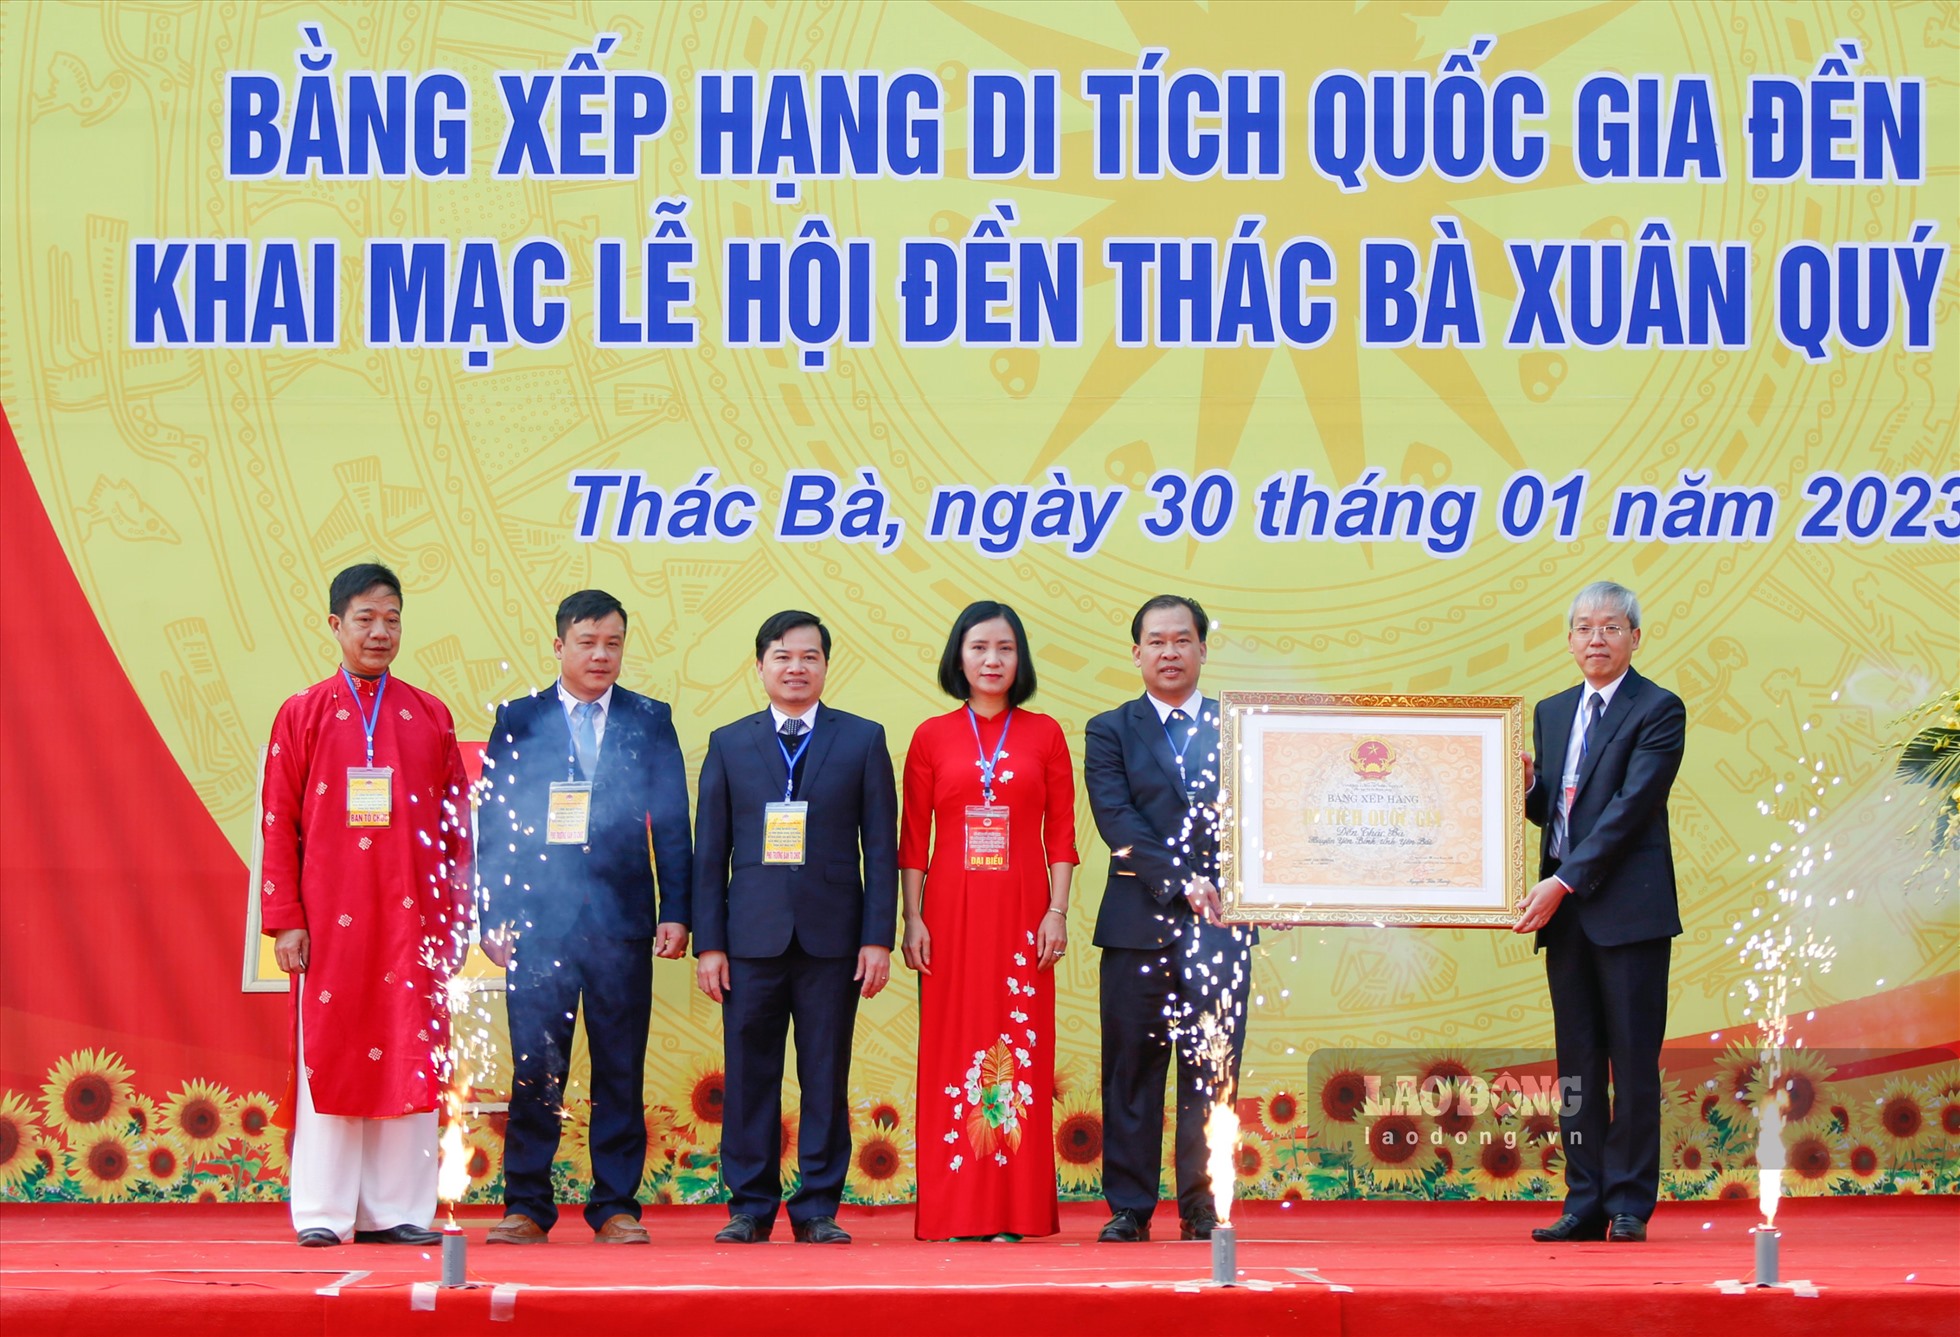 Tại buổi lễ, ông Trần Đình Thành - Cục phó Cục Di sản Văn hóa đã trao bằng xếp hạng của Bộ trưởng Bộ VHTT&DL đối với Di tích Quốc gia Đền Thác Bà.